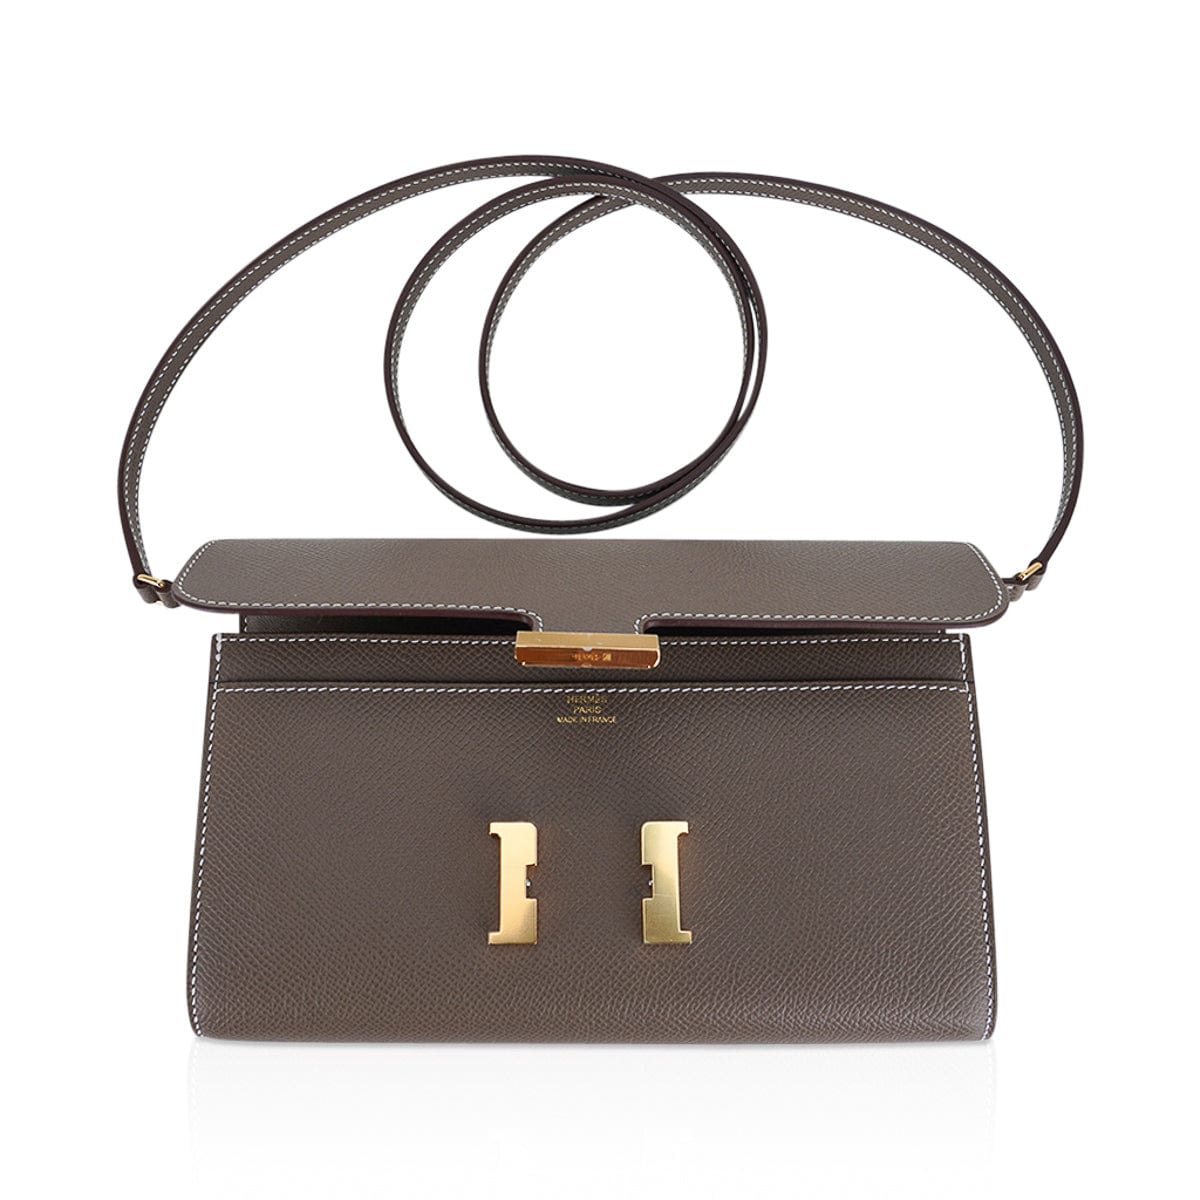 Hermès Constance Long To Go wallet $5,450 Rouge Grenat Evercolor…